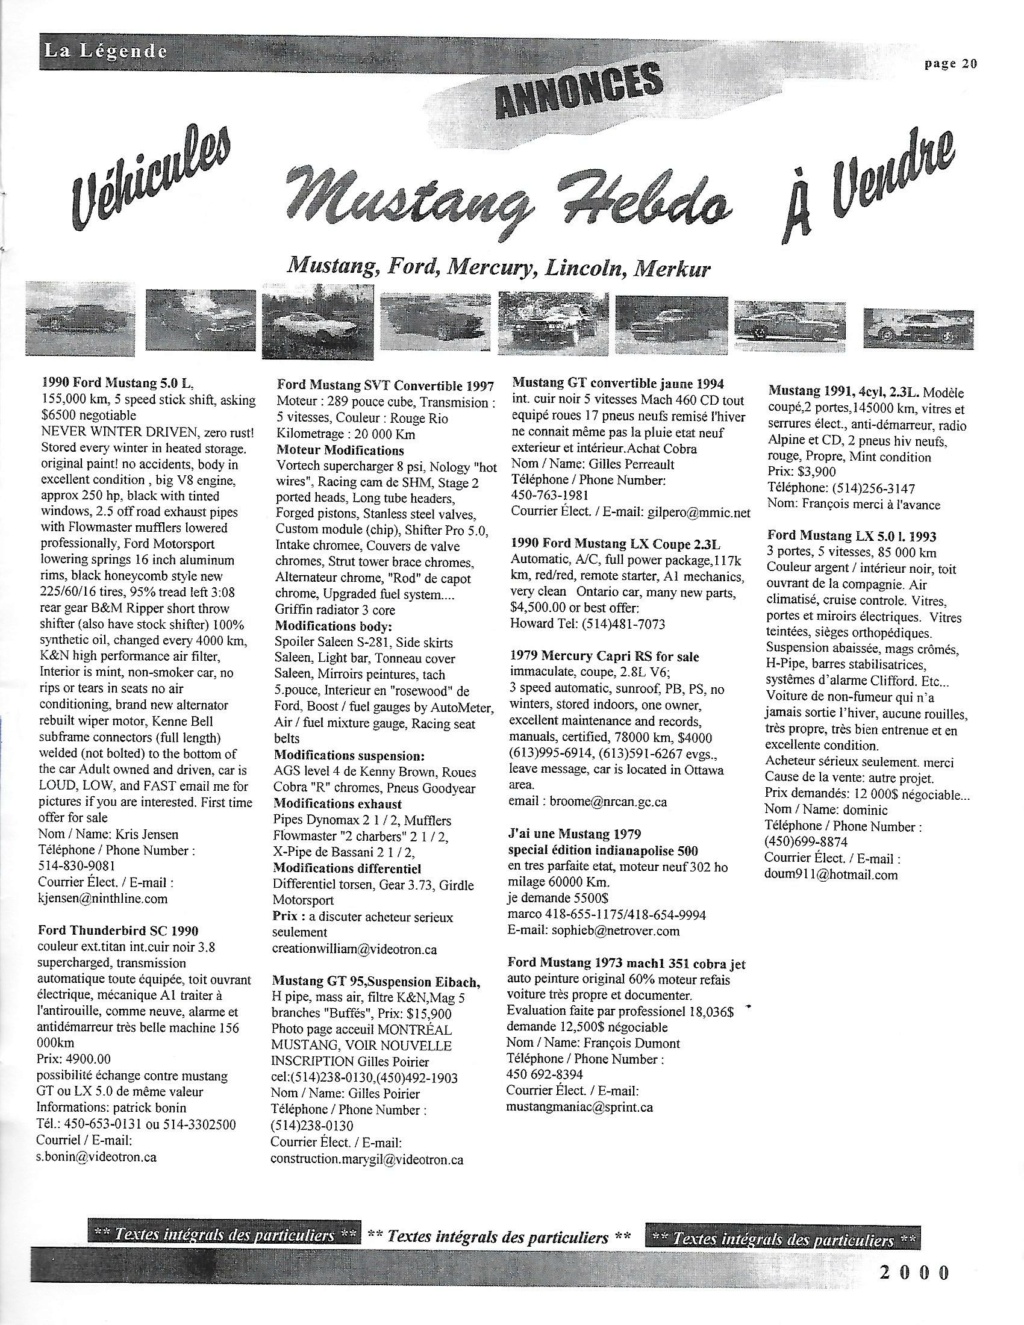 Montréal Mustang dans le temps! 1981 à aujourd'hui (Histoire en photos) - Page 9 2000-071